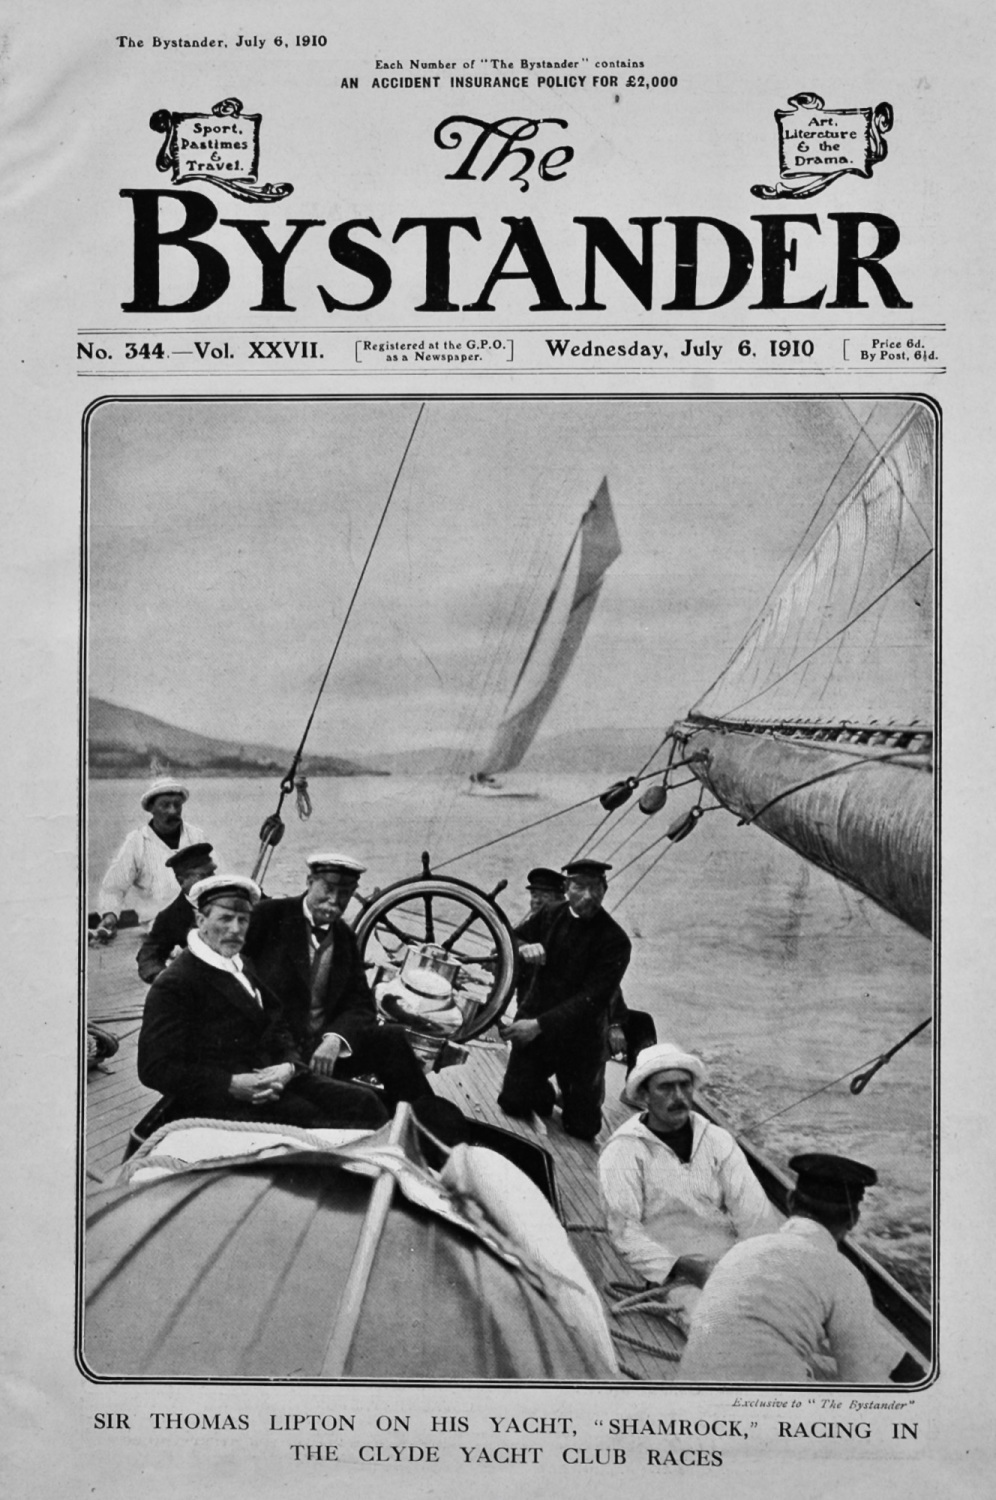 The Bystander Jul 10th 1910.